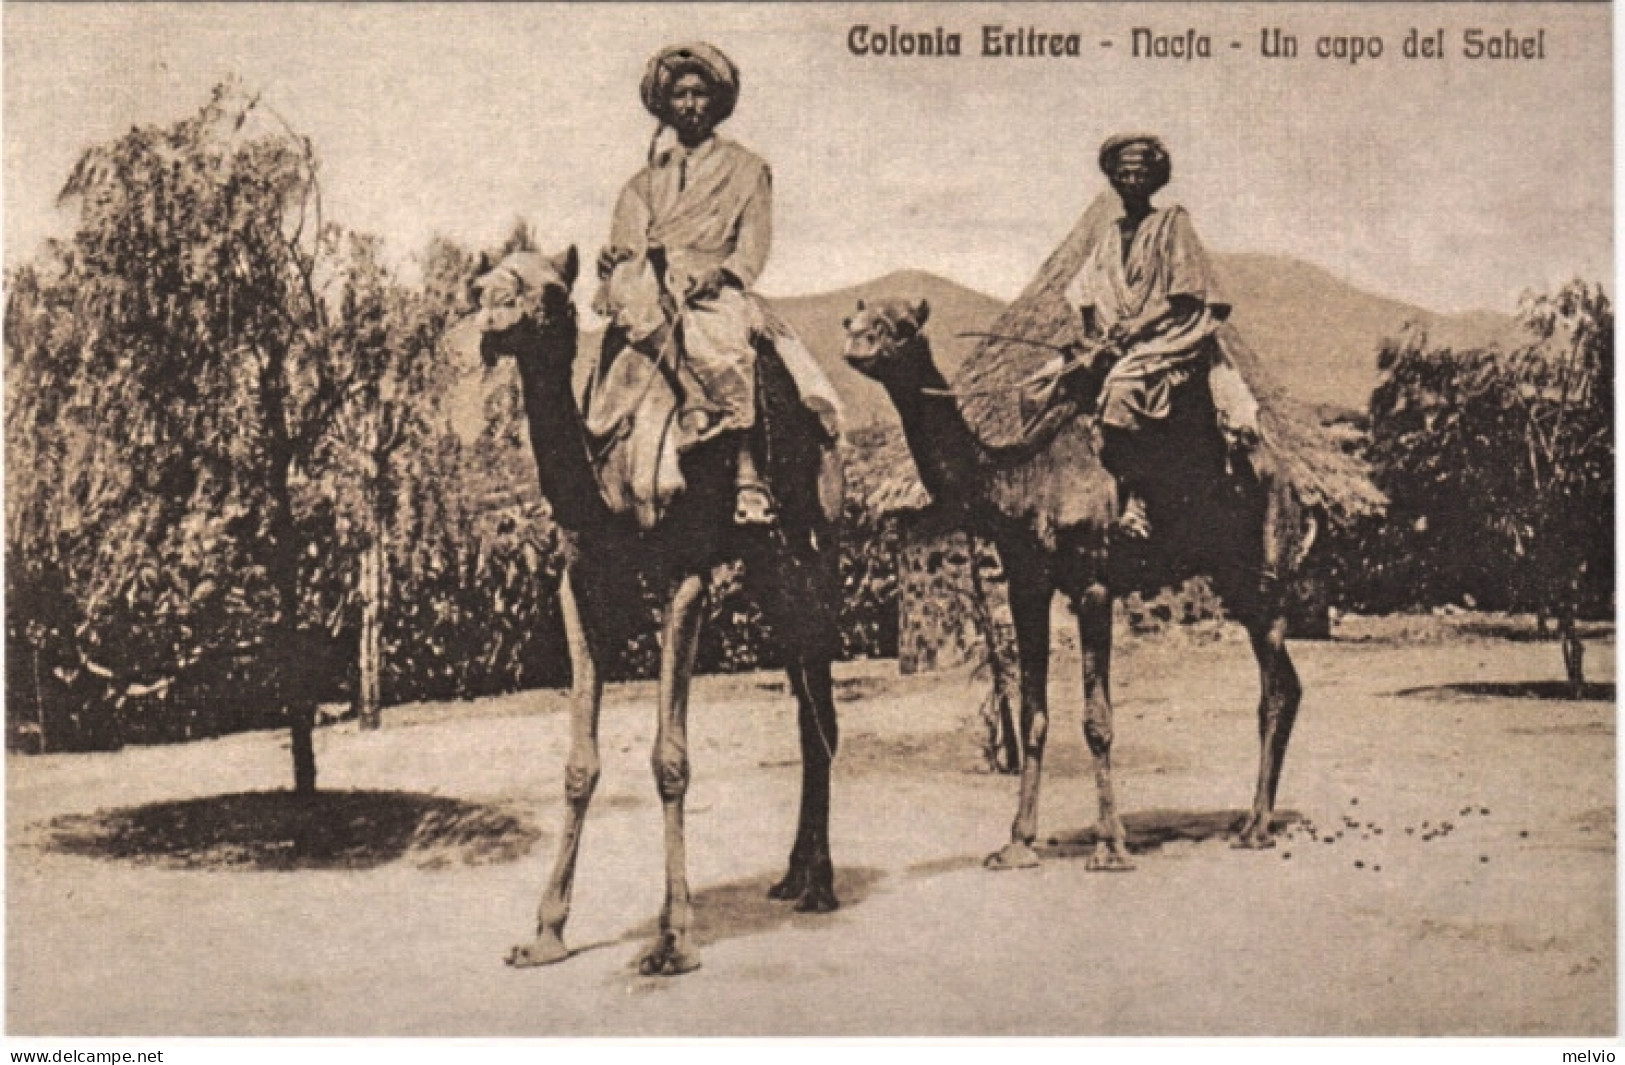 1920circa-Colonia Eritrea Nacja Un Capo Del Sahel - Erythrée